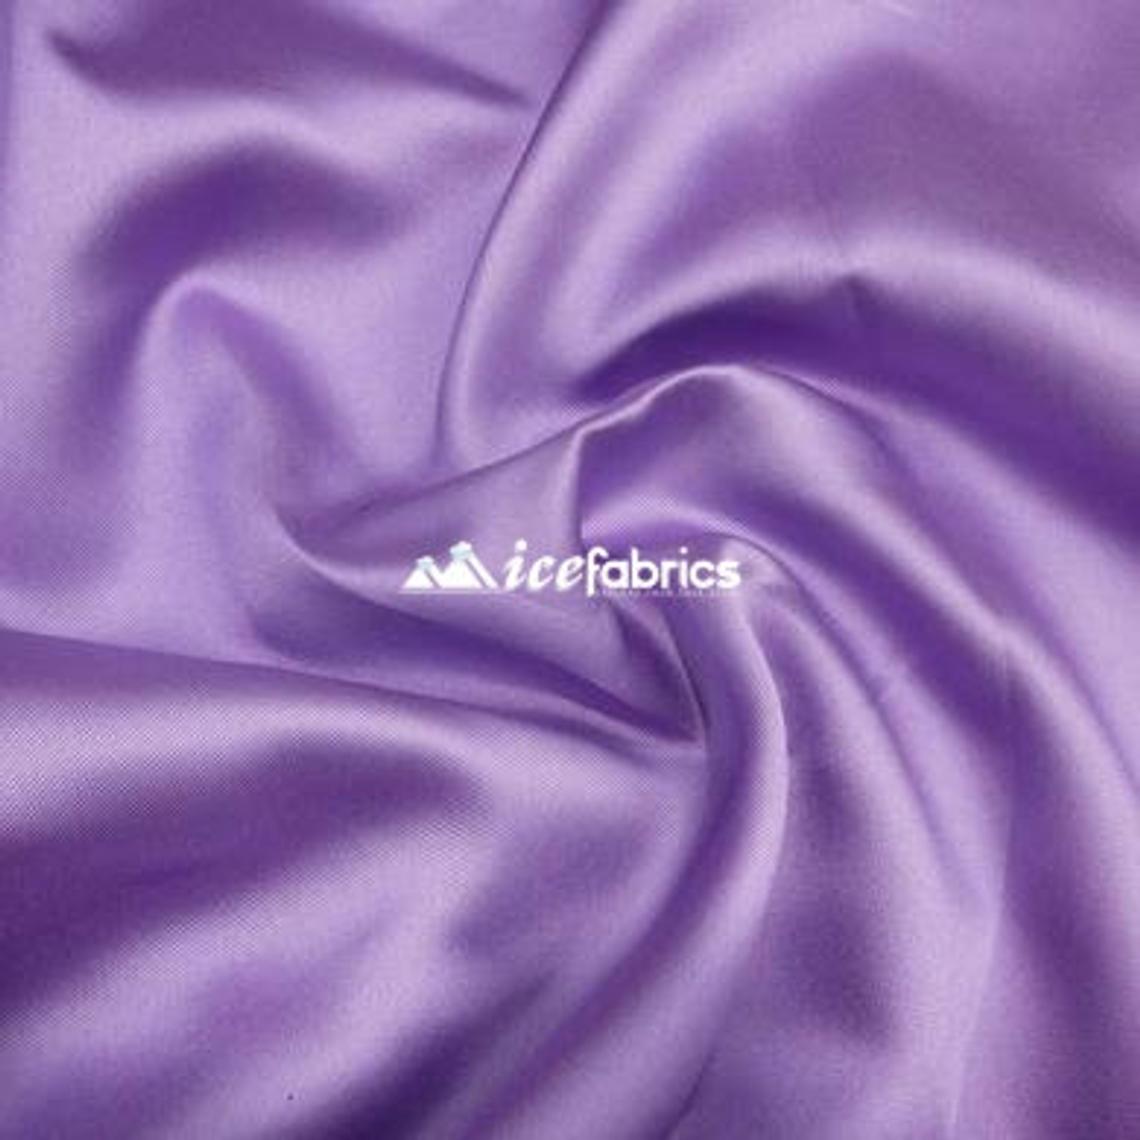 5% Stretch Satin Fabric Spandex Fabric BTY (Lavender)Spandex FabricICEFABRICICE FABRICSLavender15% Stretch Satin Fabric Spandex Fabric BTY (Lavender) ICEFABRIC